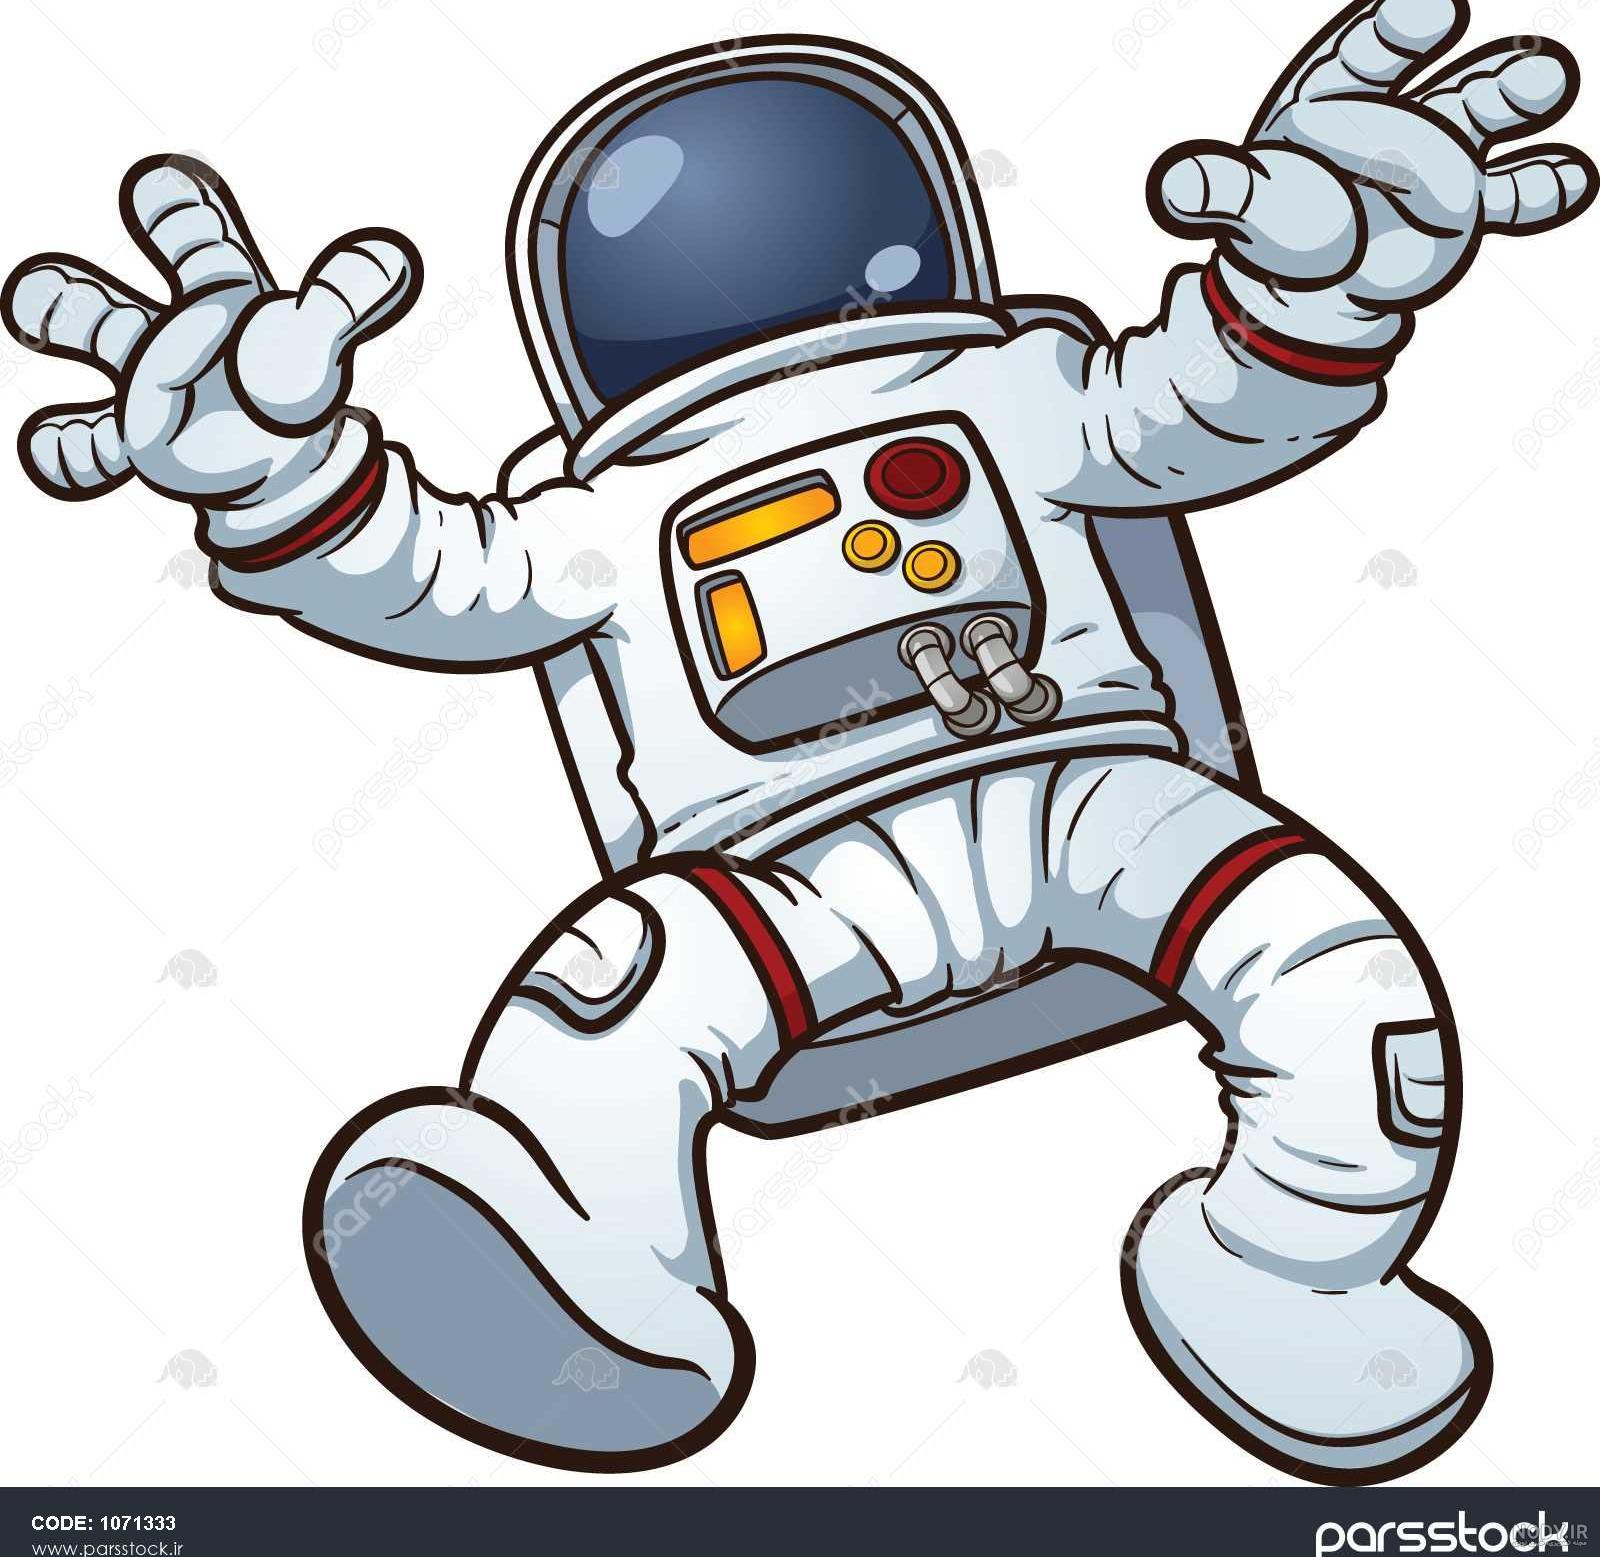 عکس کارتونی از فضانورد